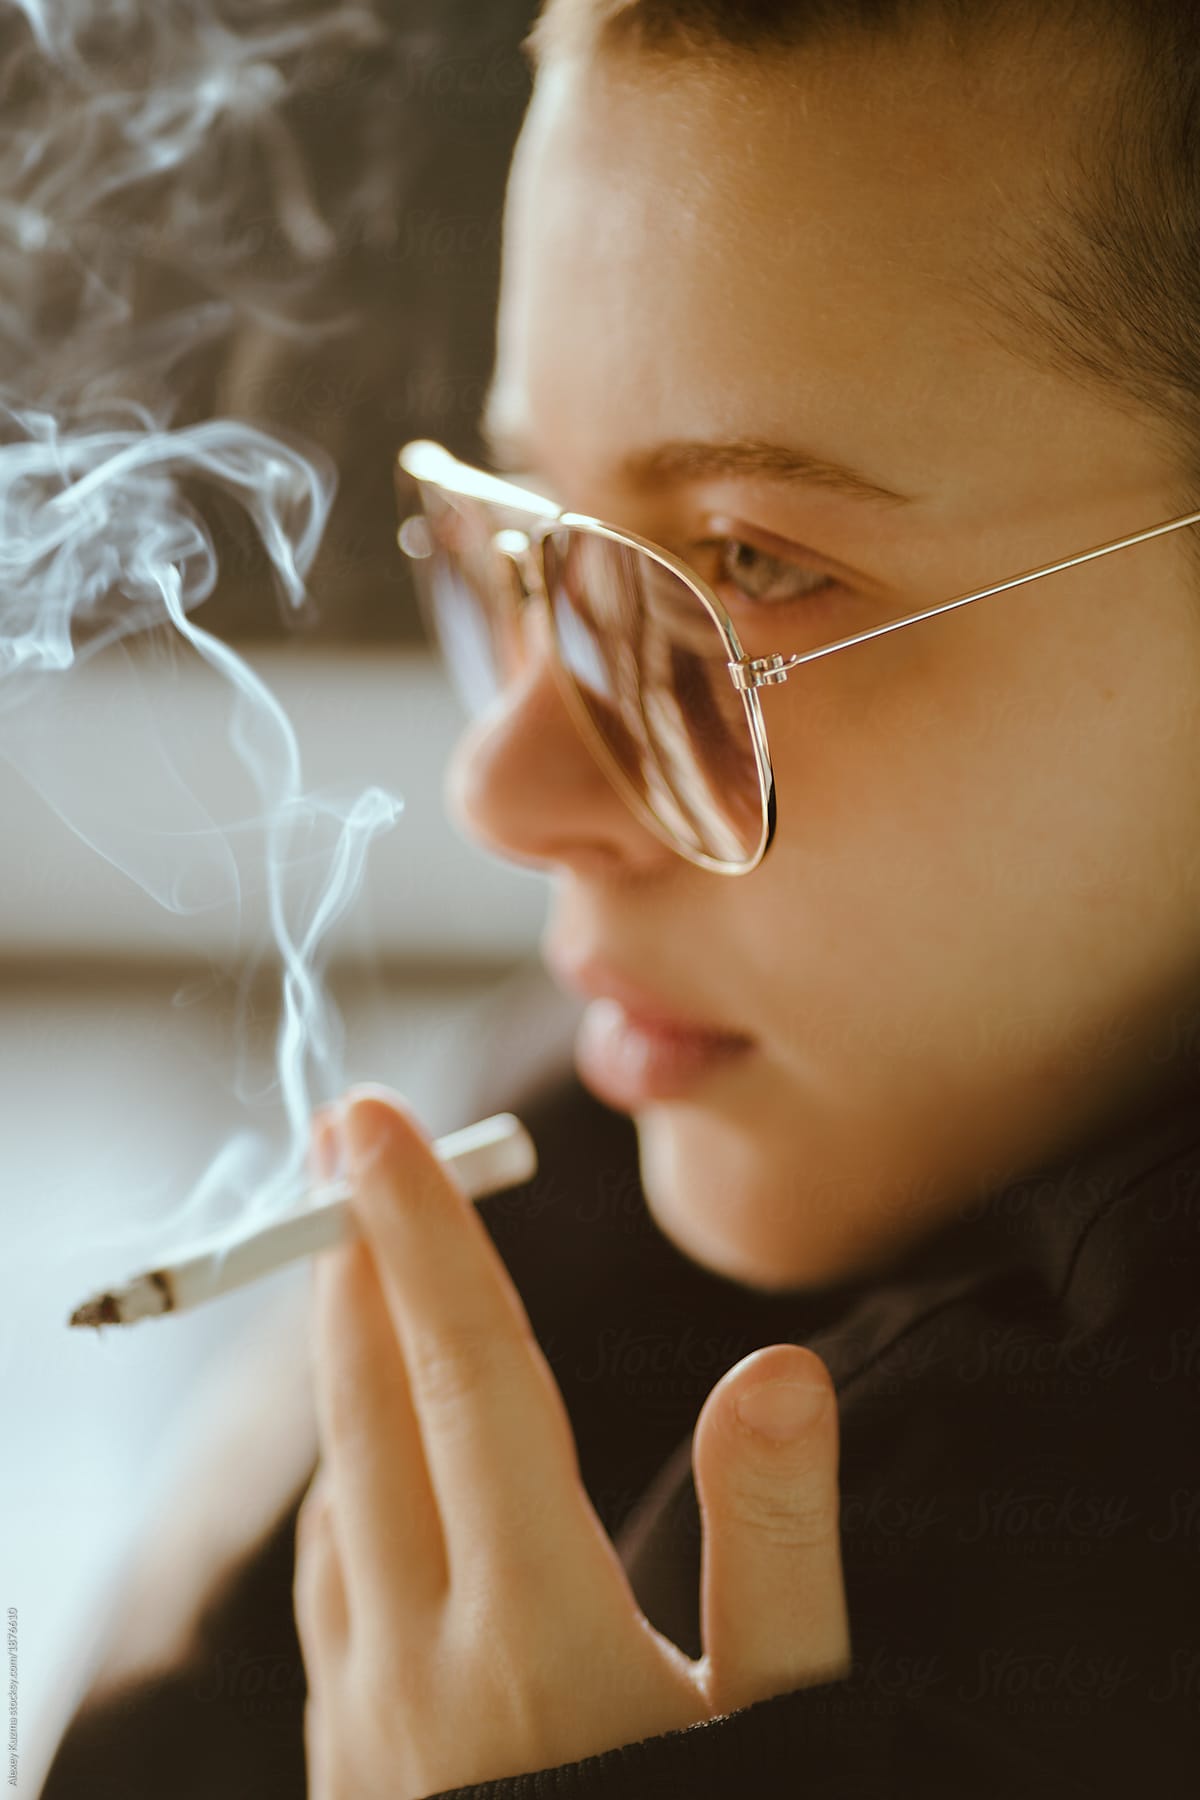 androgyne woman smoking